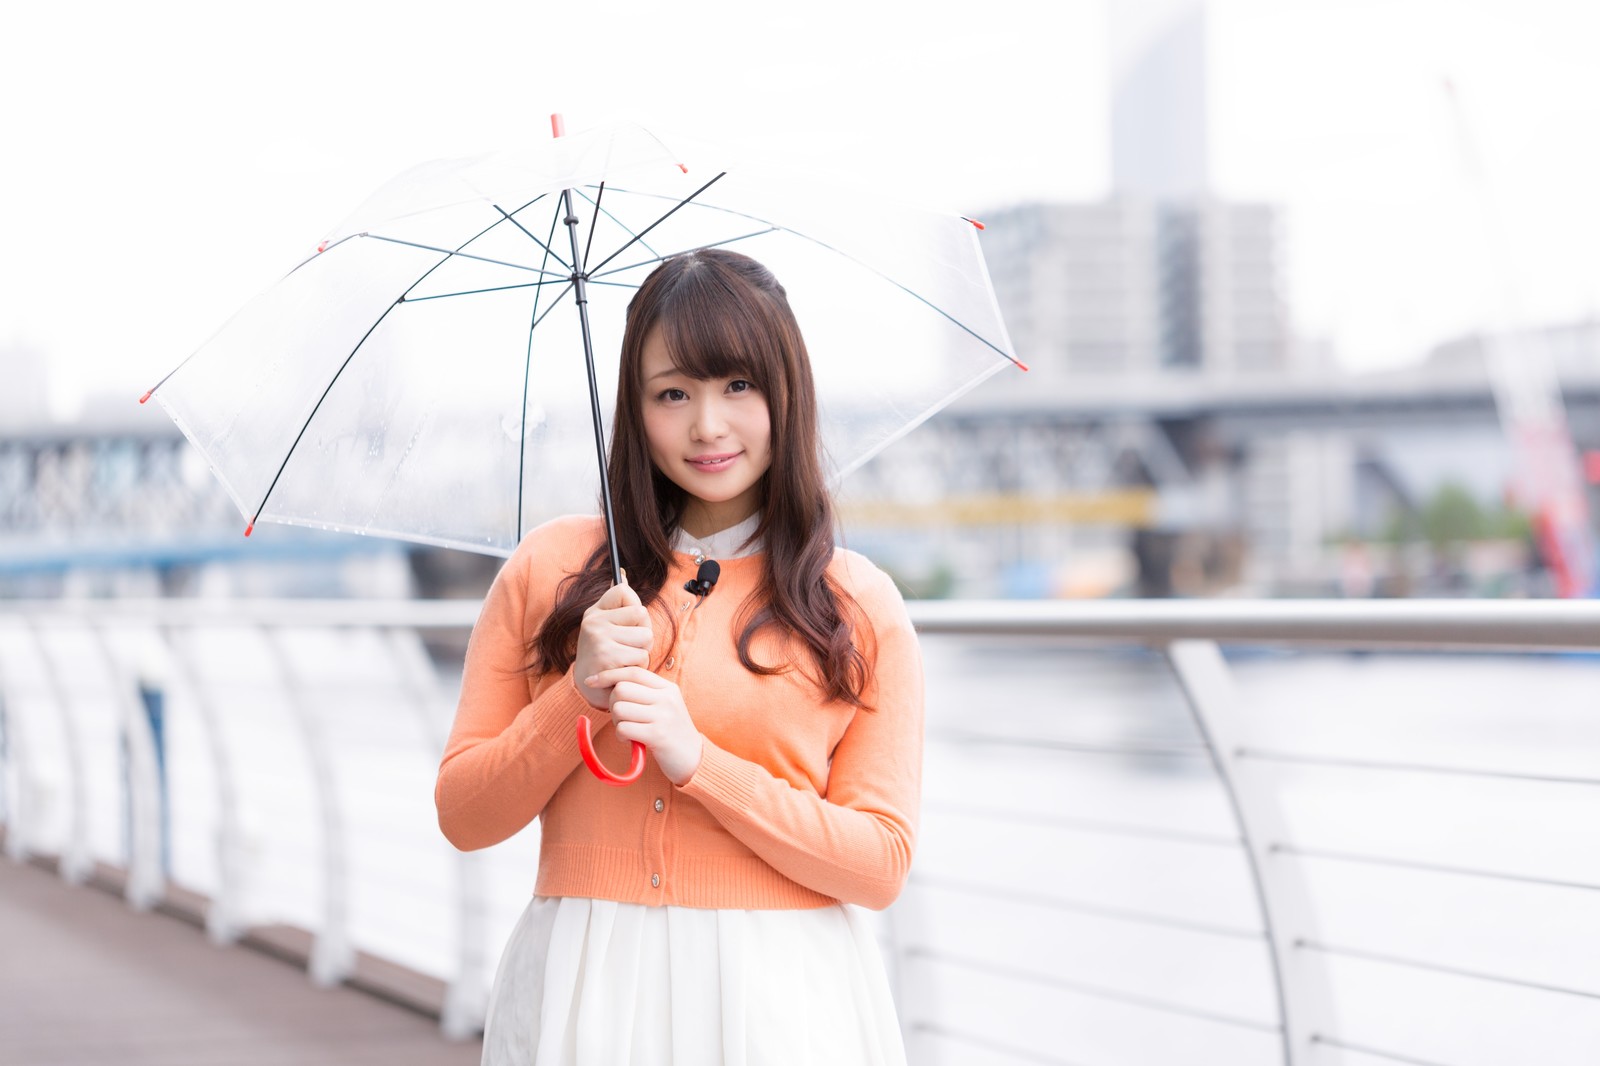 http://iphonequick.com/yamato/saya_rain.jpg